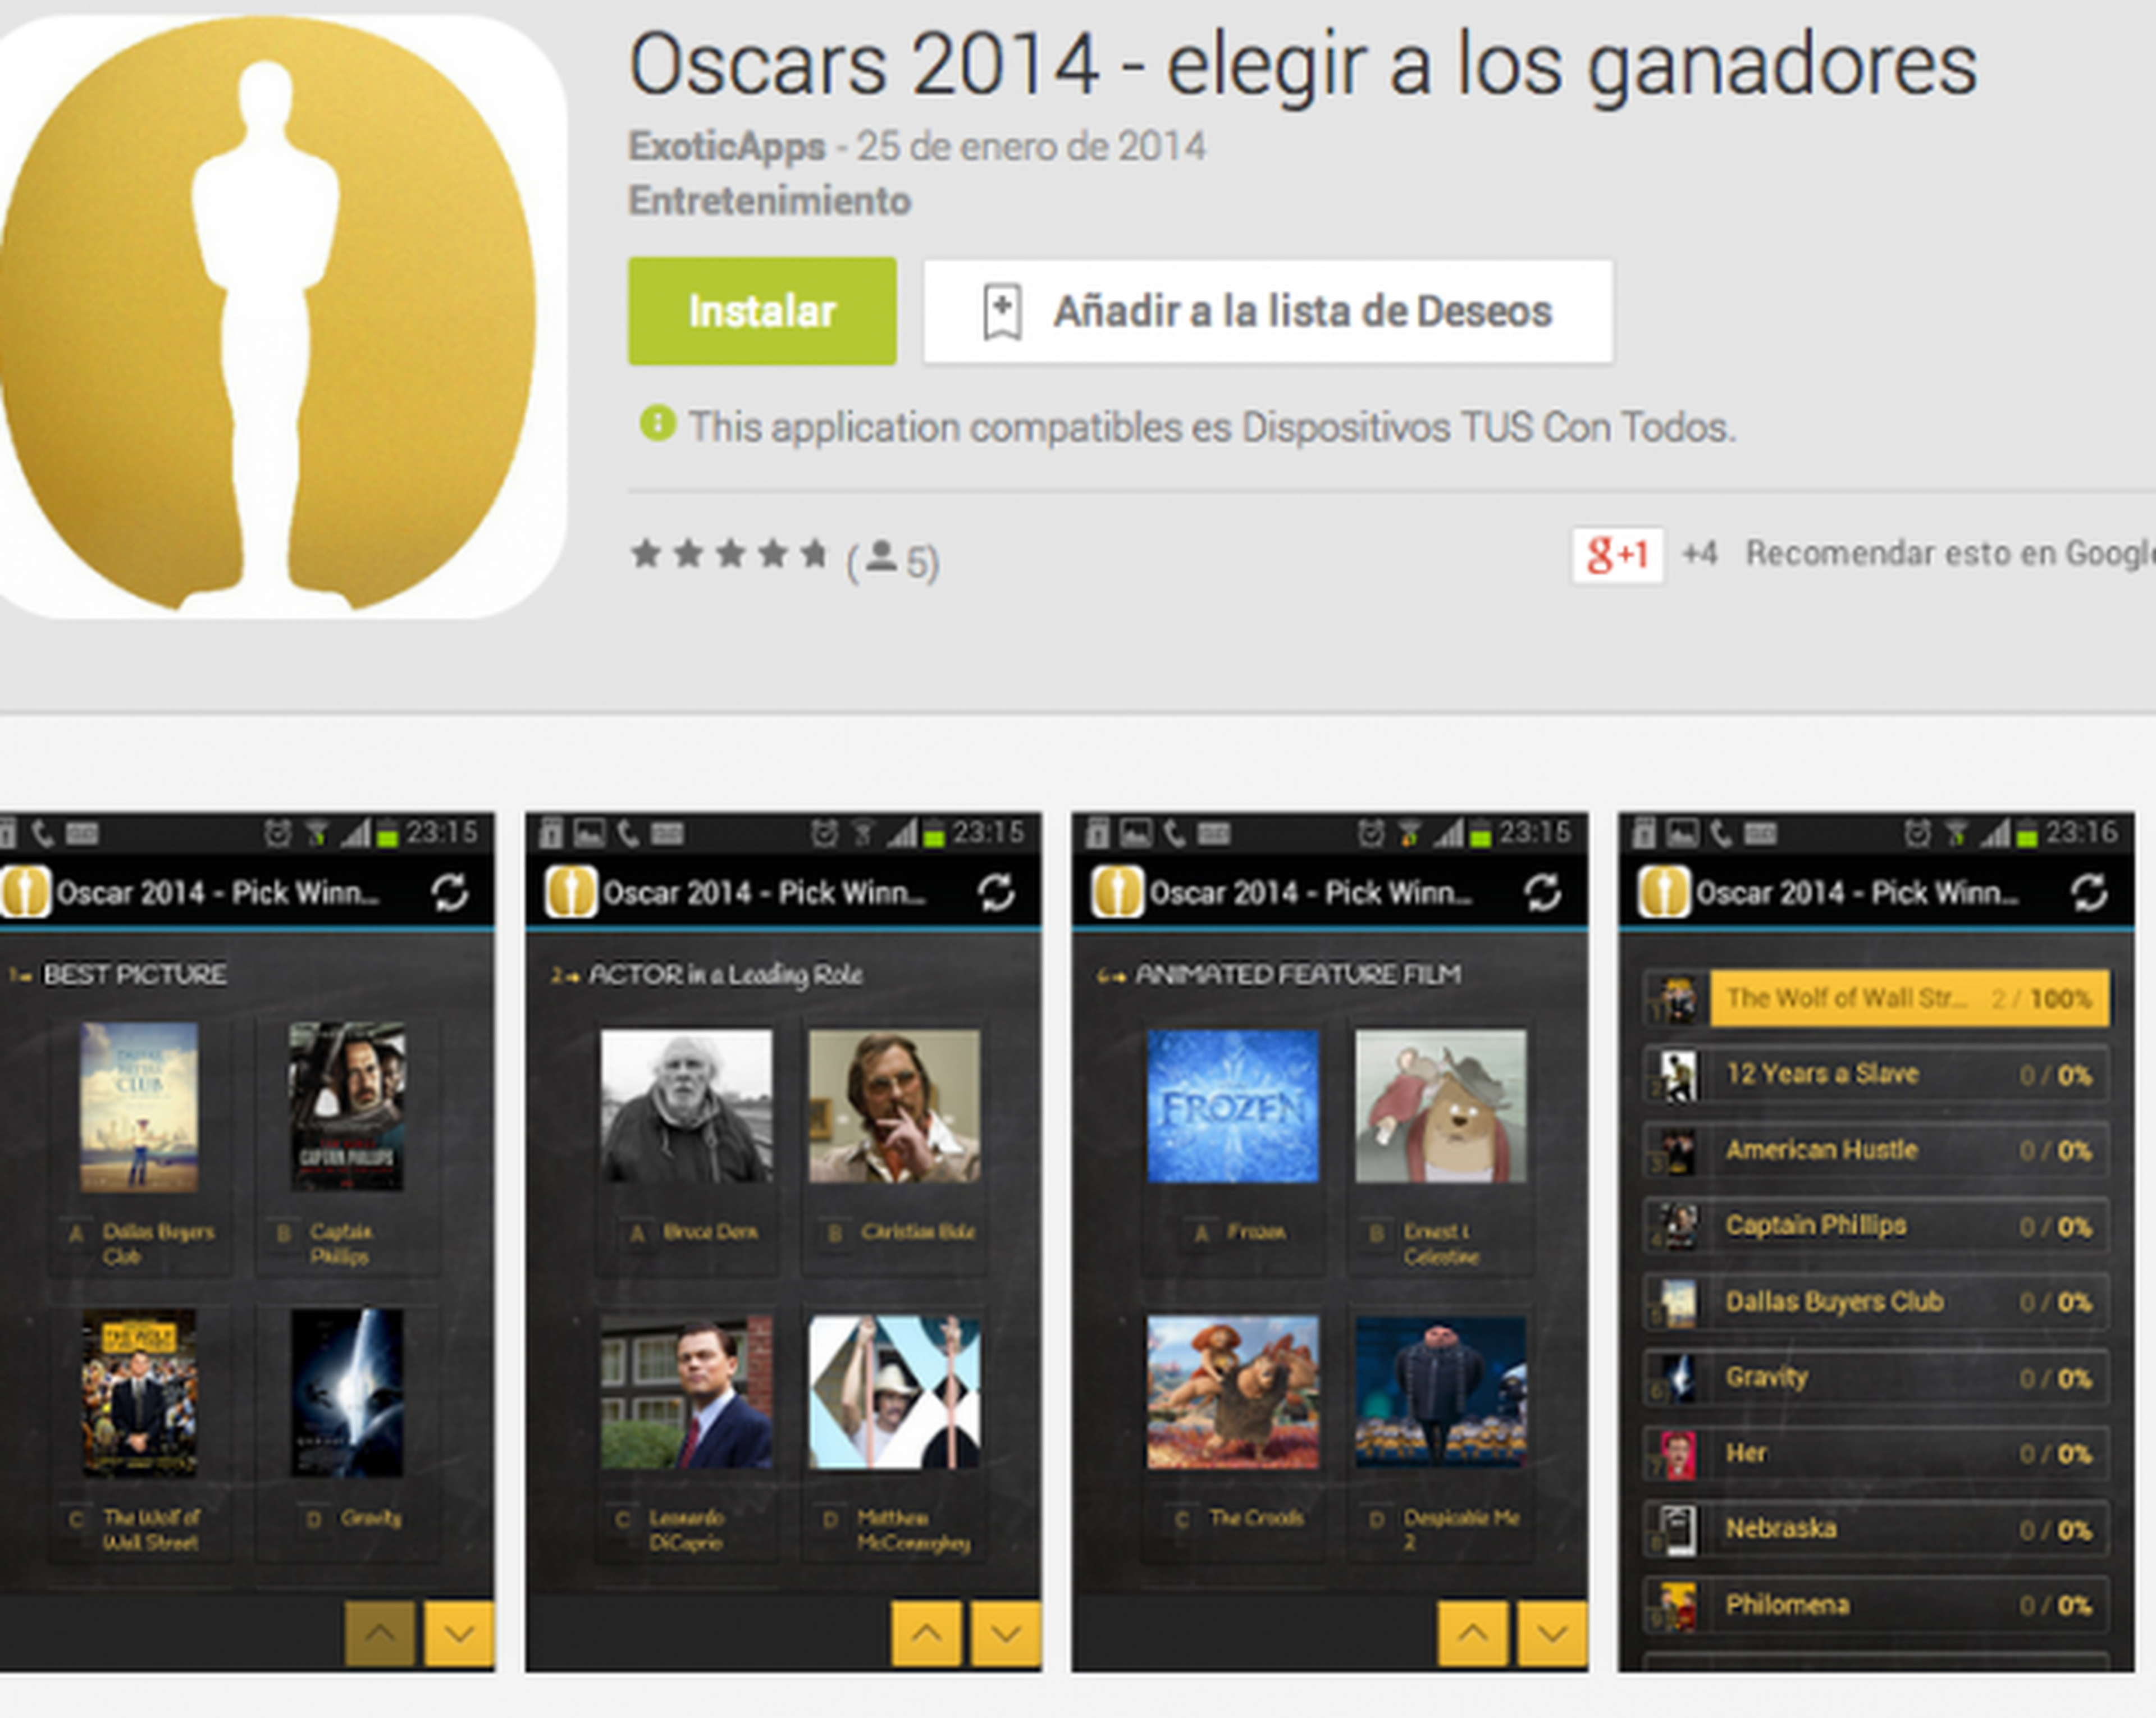 Oscars 2014 Pick Winners